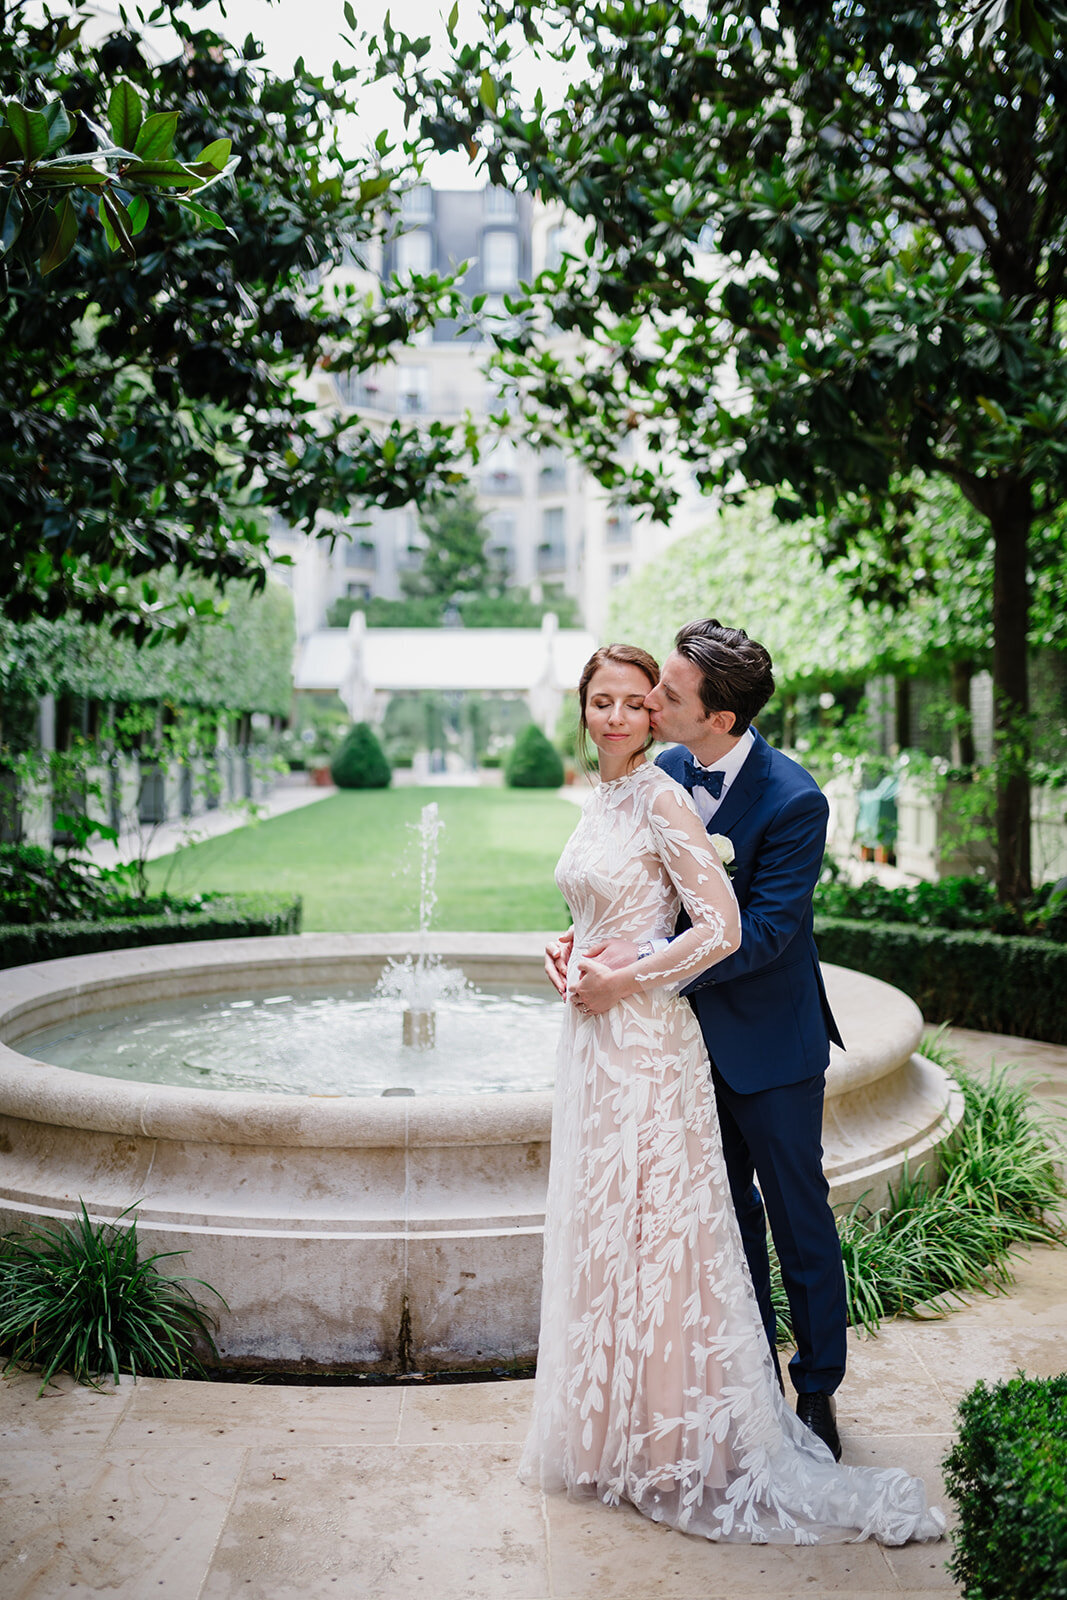 Photographe mariage haut de gamme Paris